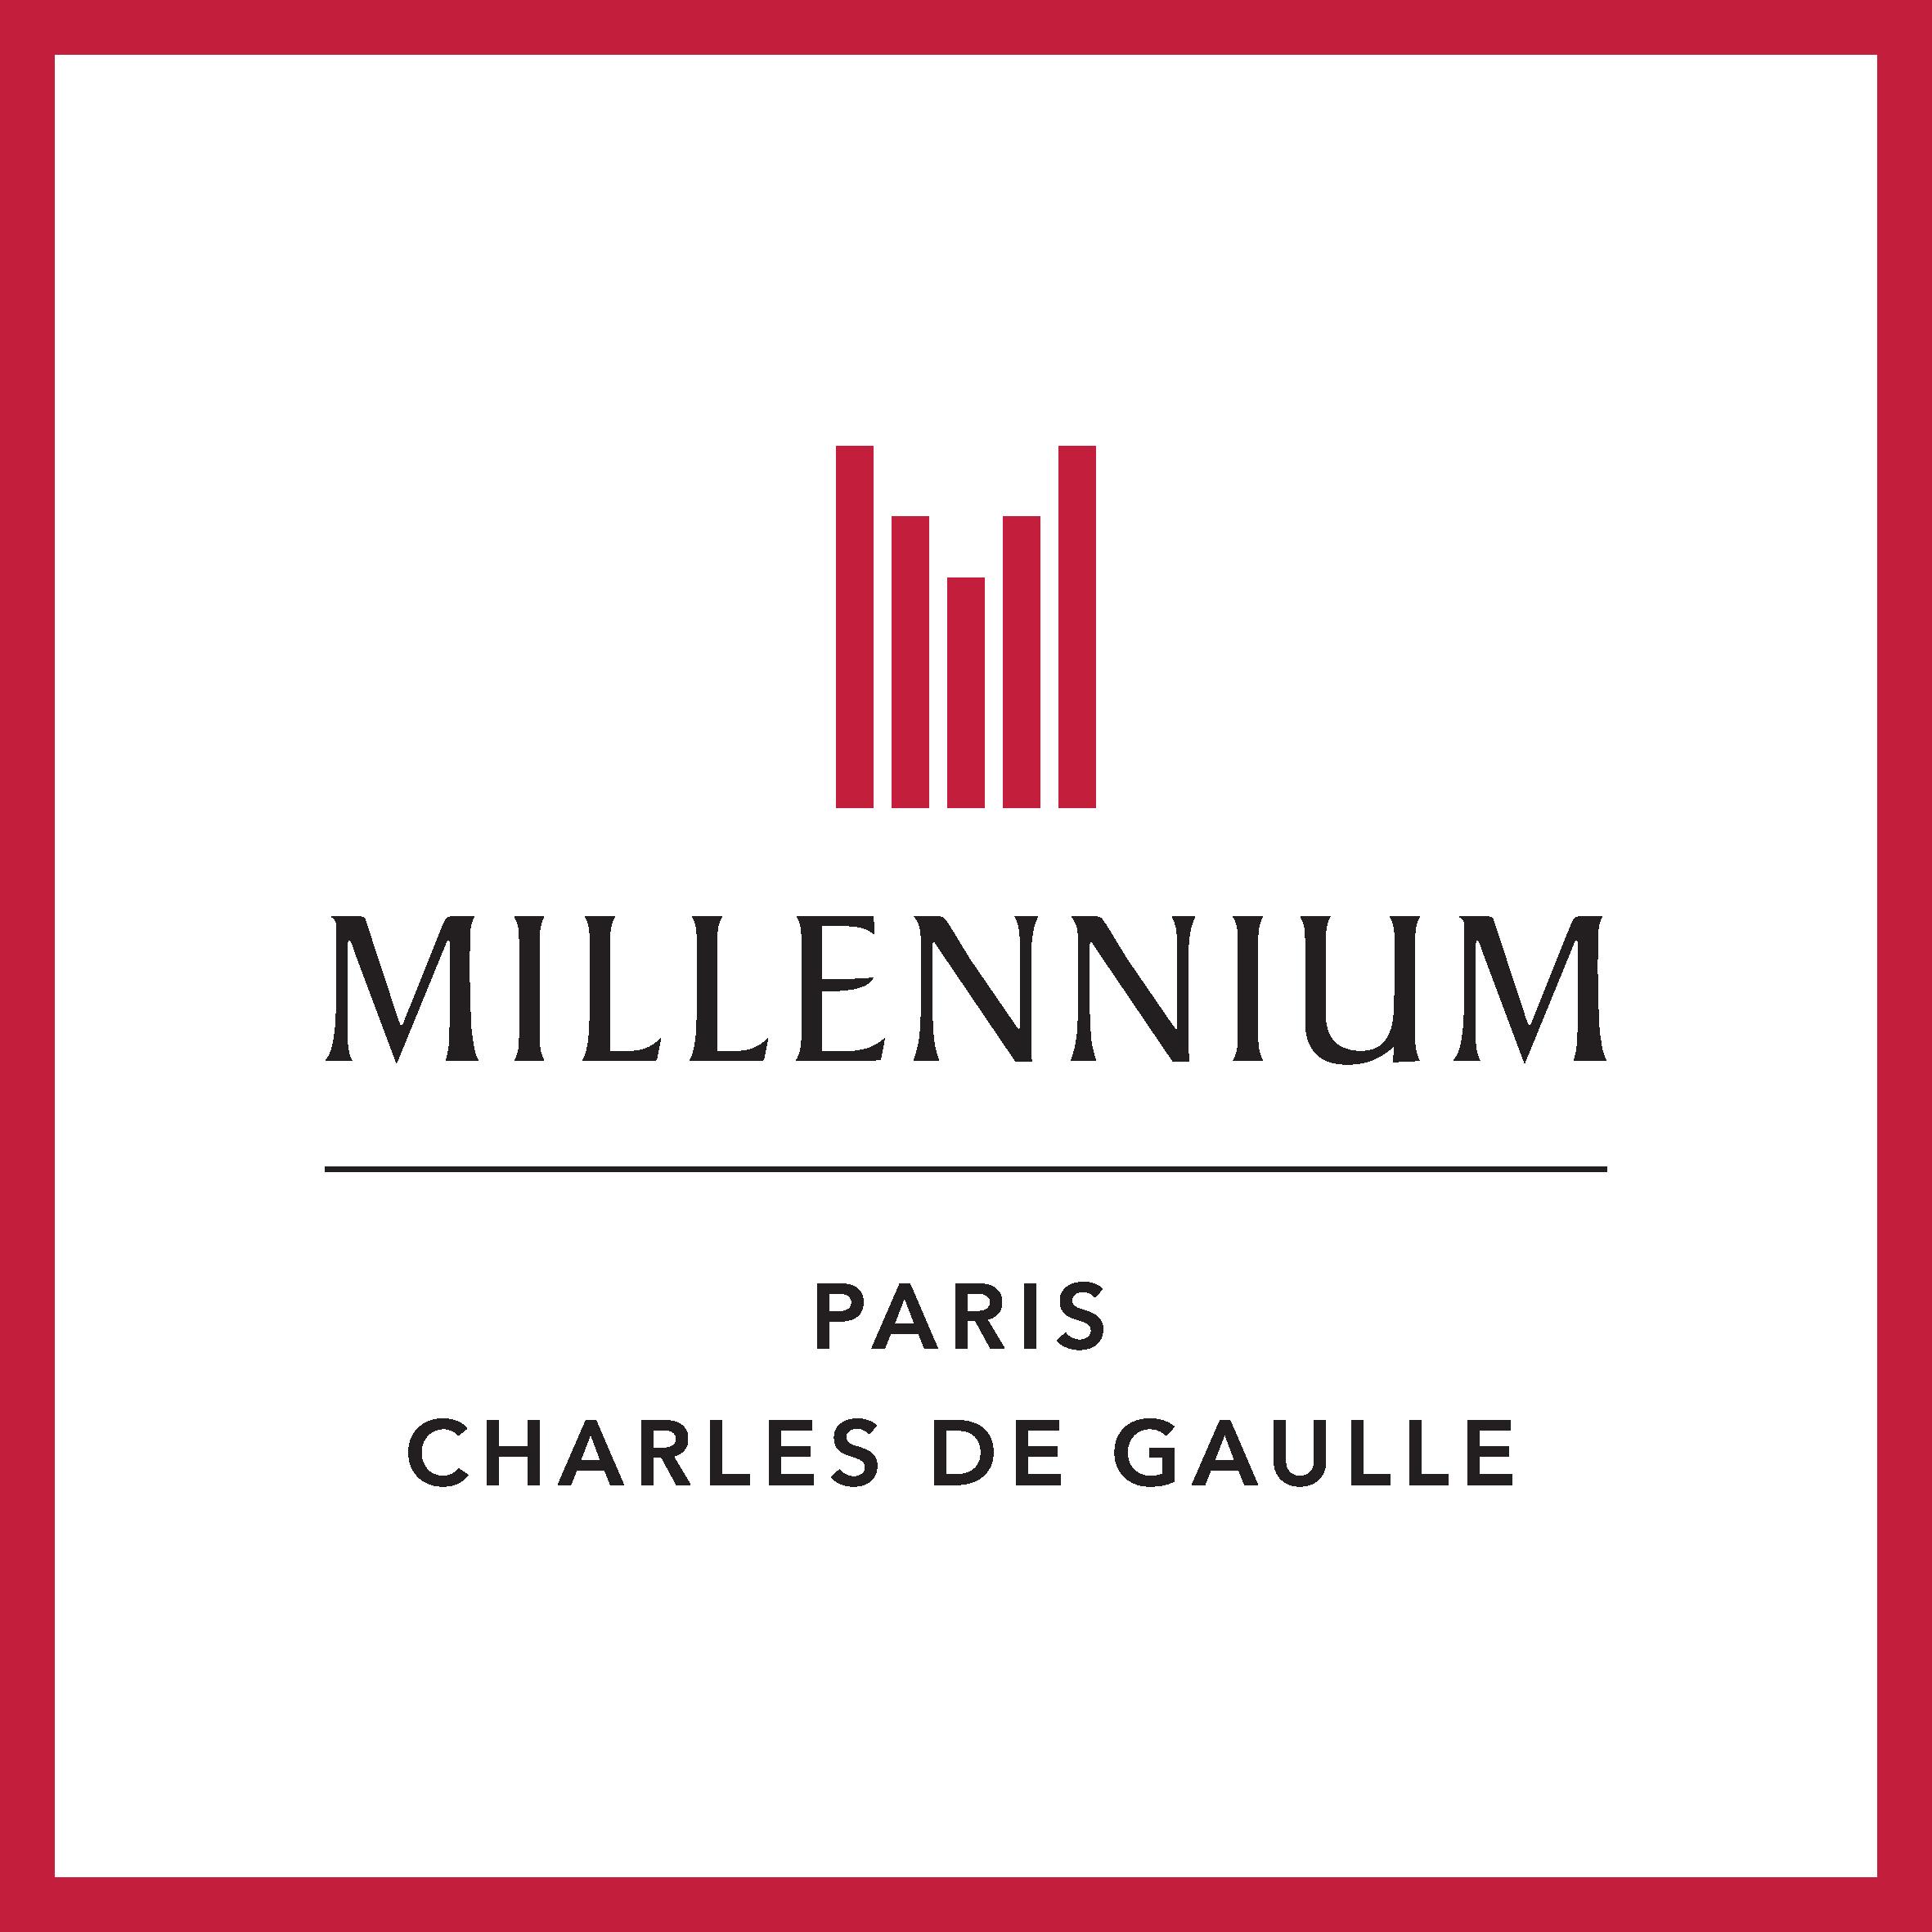 Millennium Hotel Paris Charles De Gaulle Logo